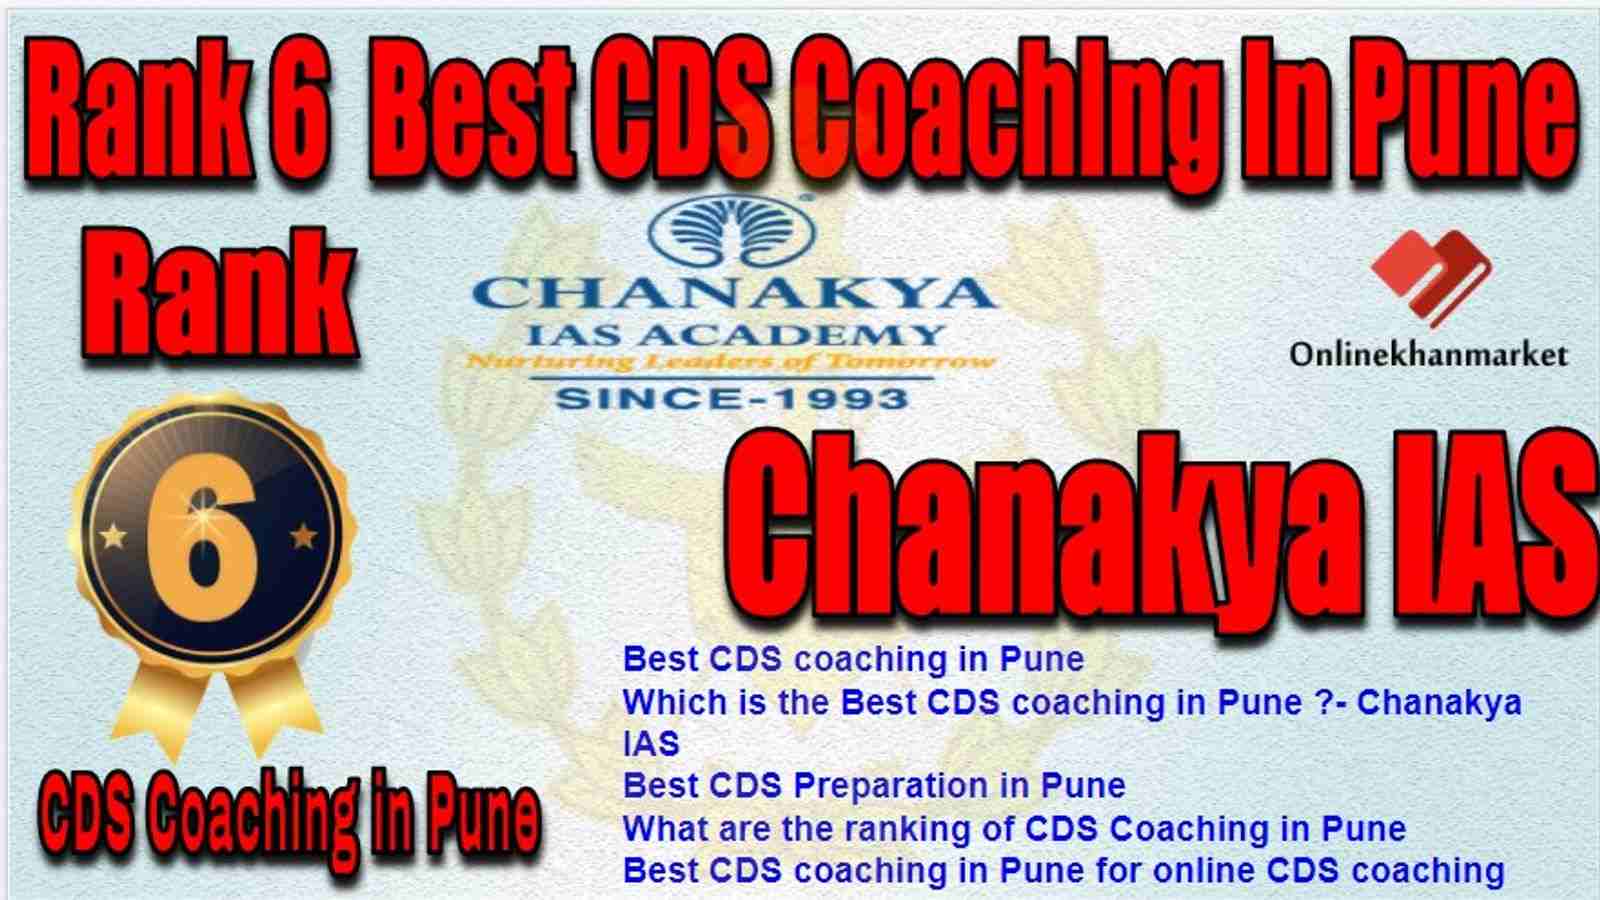 Rank 6 Best CDS Coaching in pune